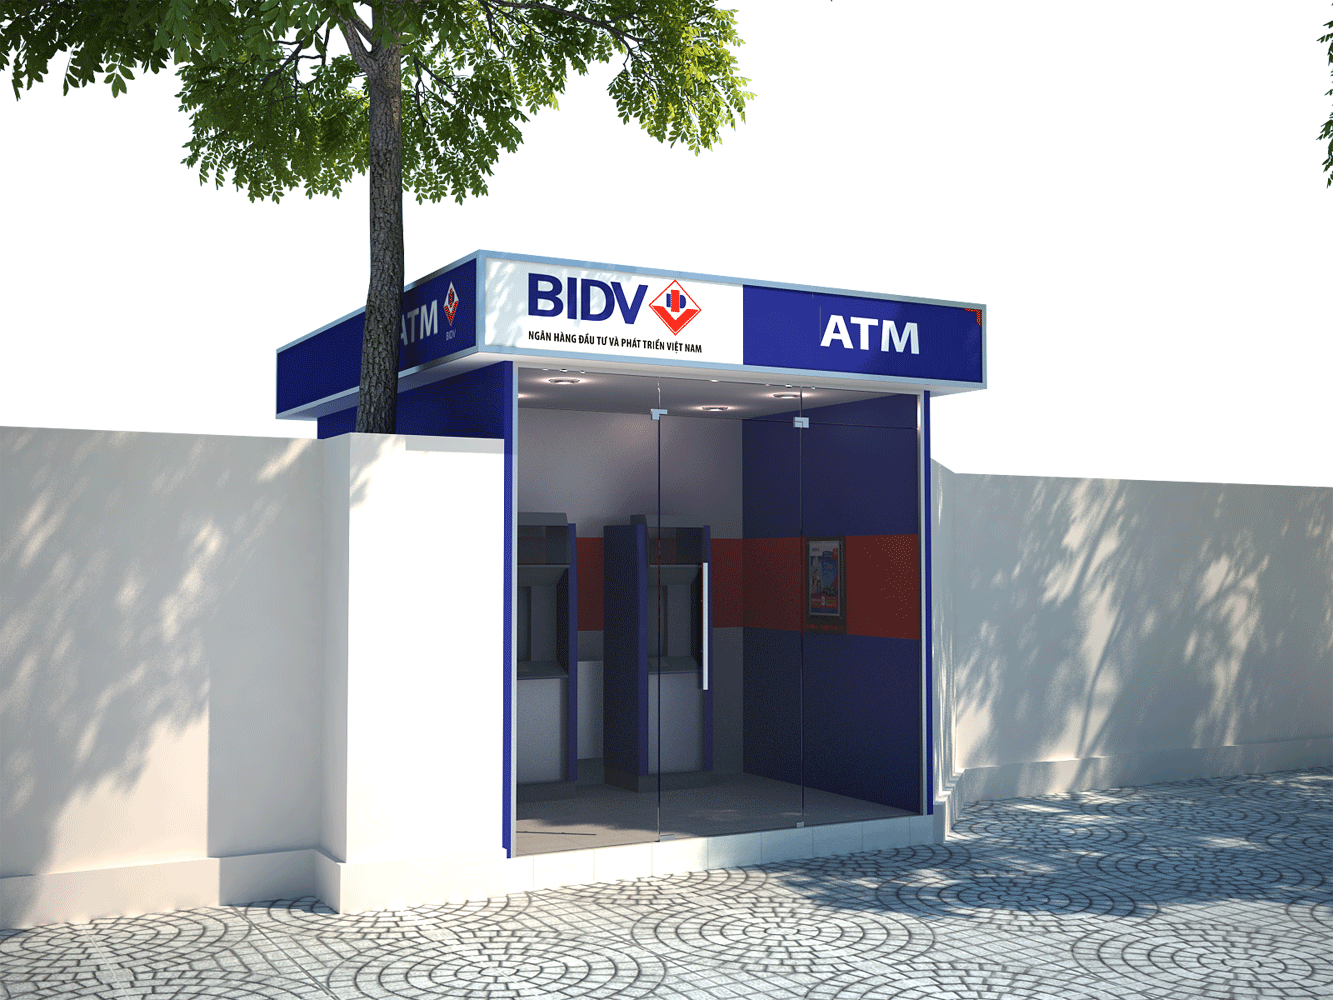 Khách hàng mất gần 40 triệu trong tài khoản ATM